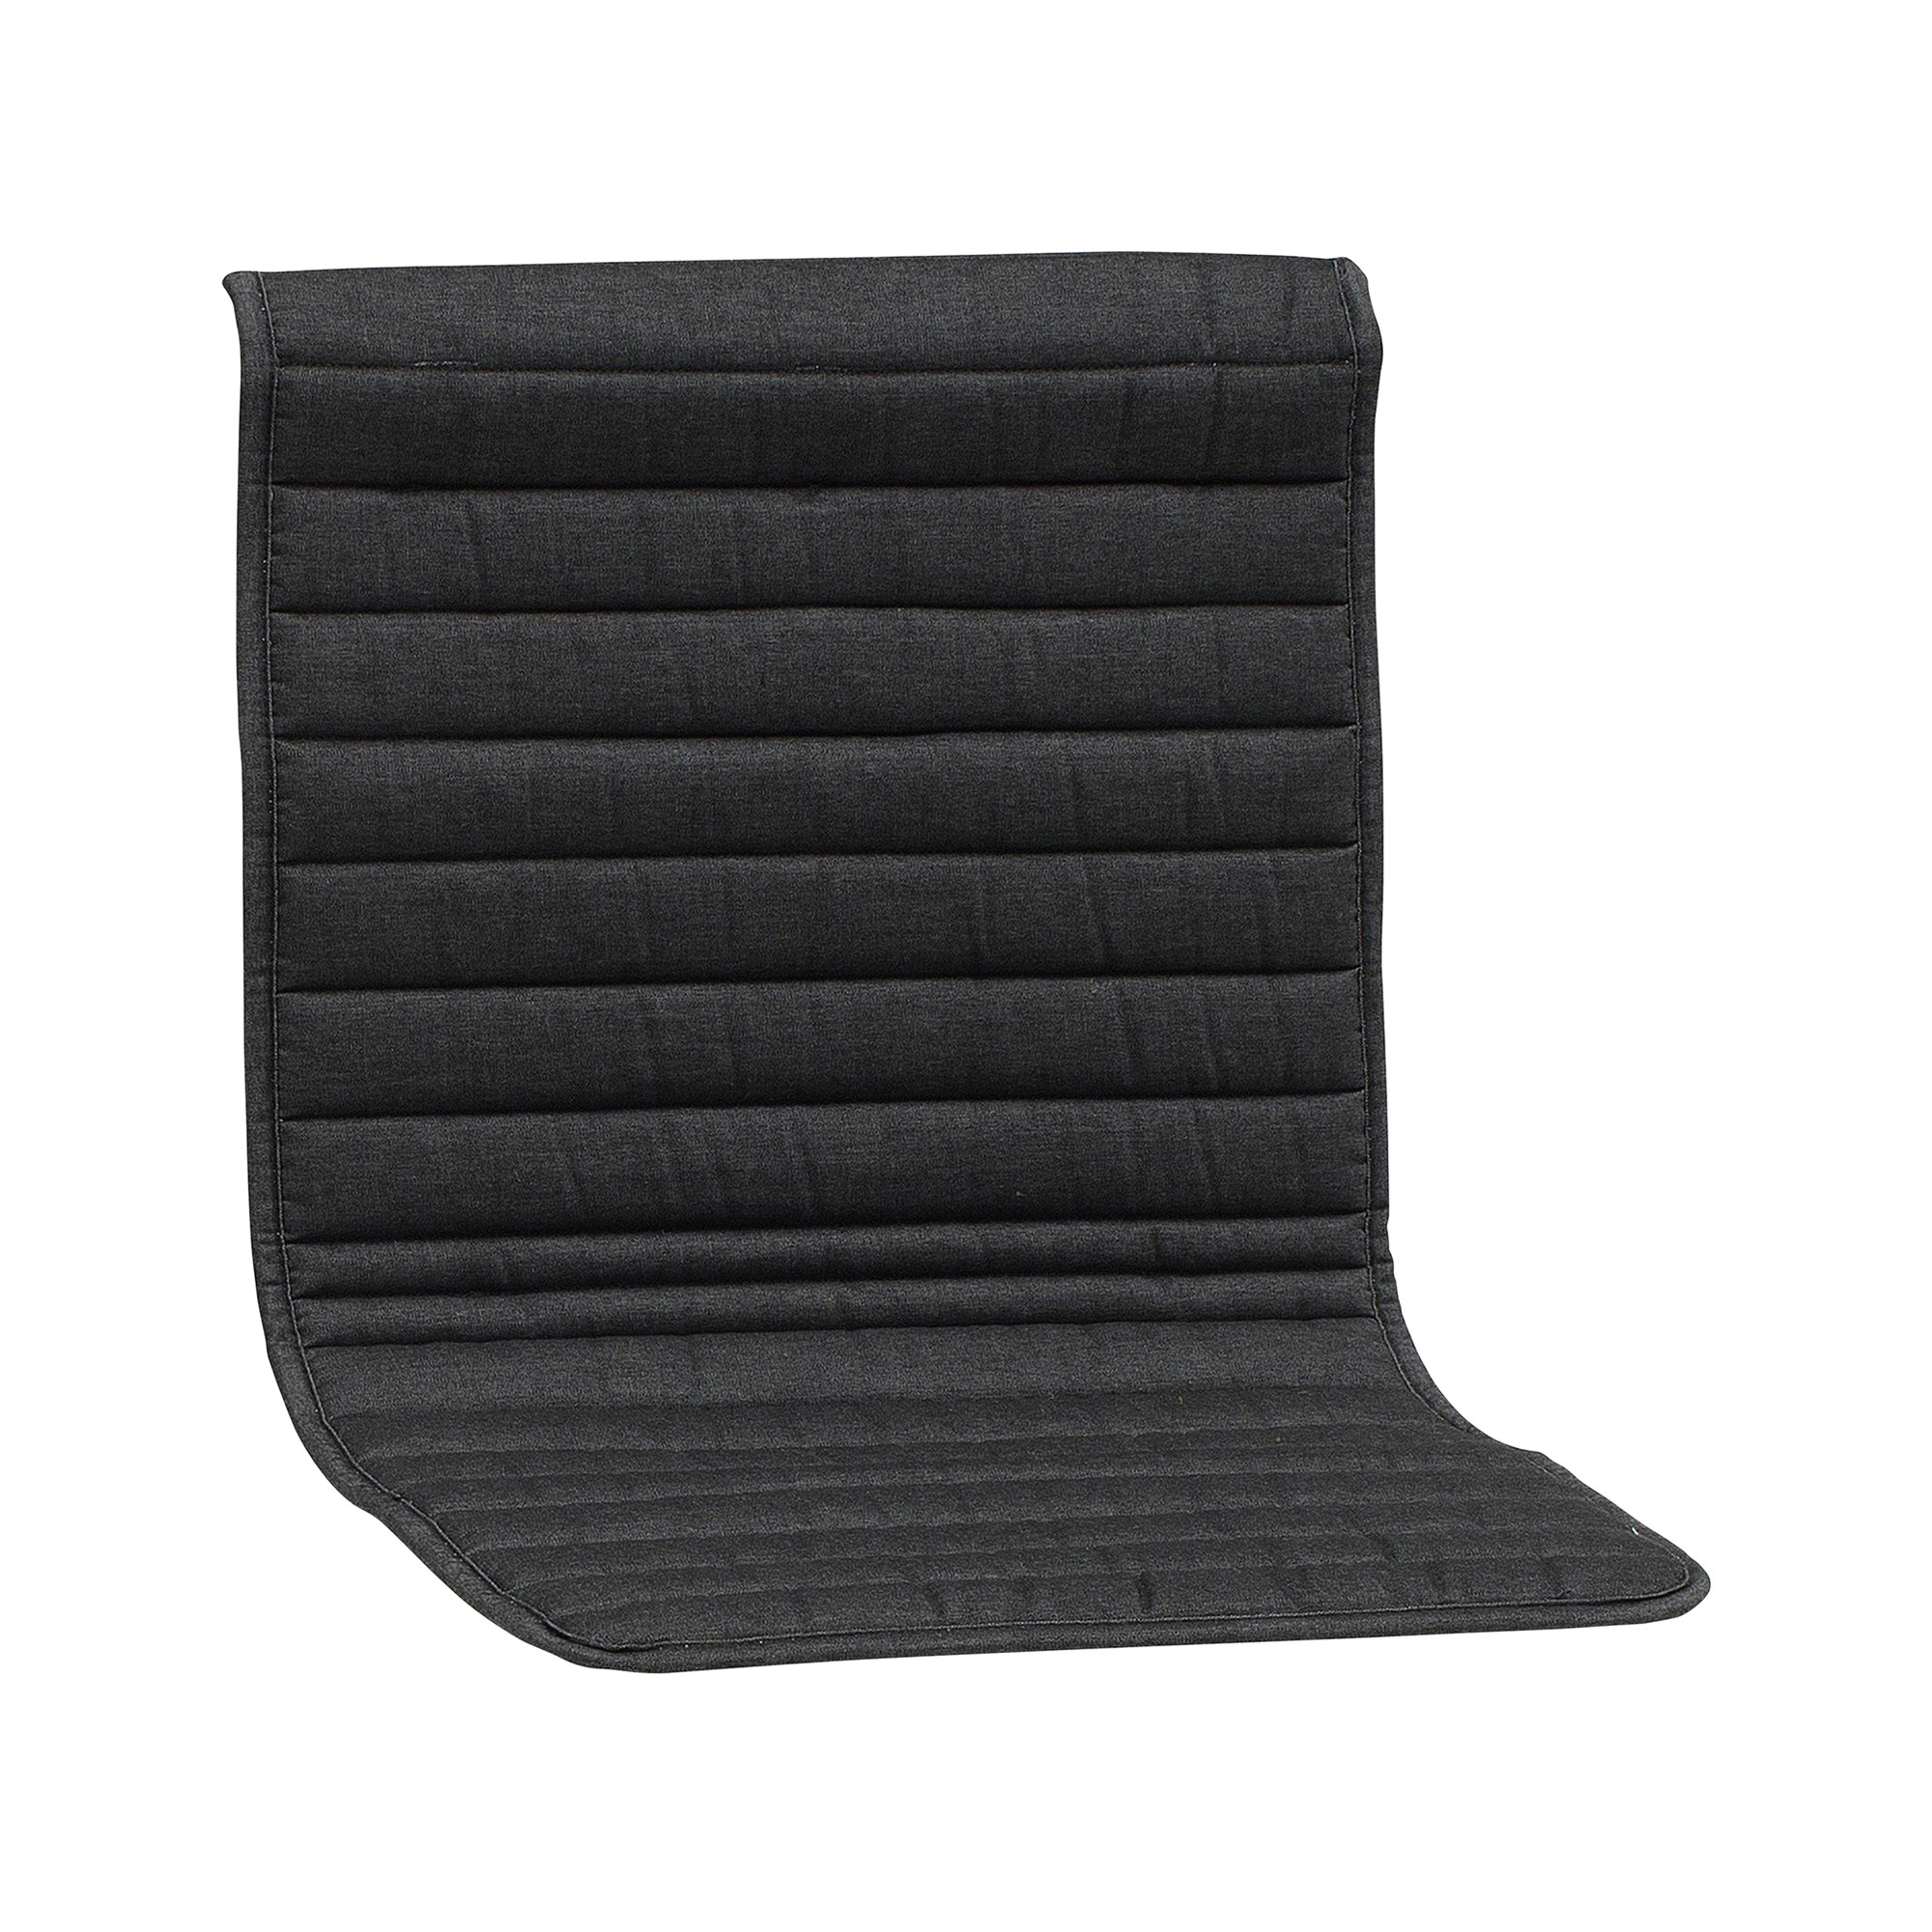 fdb møbler - coussin de siège pour la chaise de jardin m14 sammen - anthracite/dralon®/lxhxp 45,5x2x90cm/pour le chaise de jardin m1